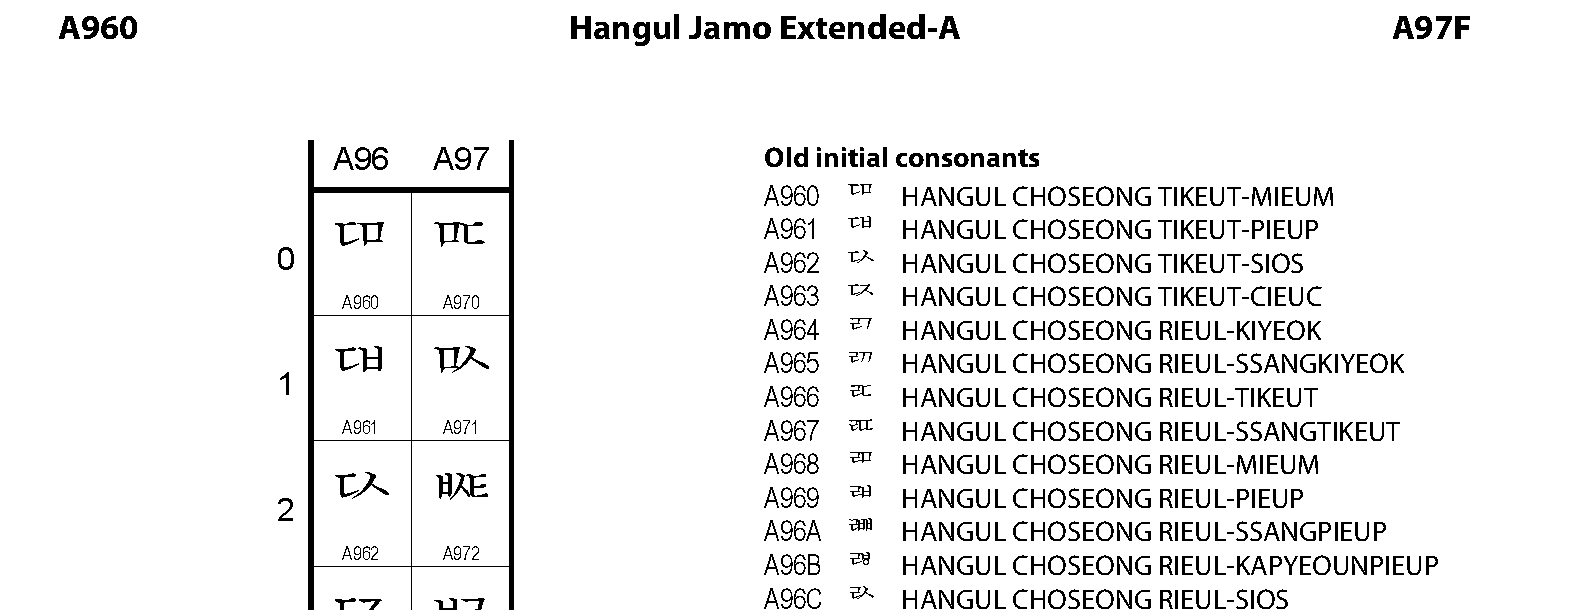 Unicode - Hangul Jamo Extended-A